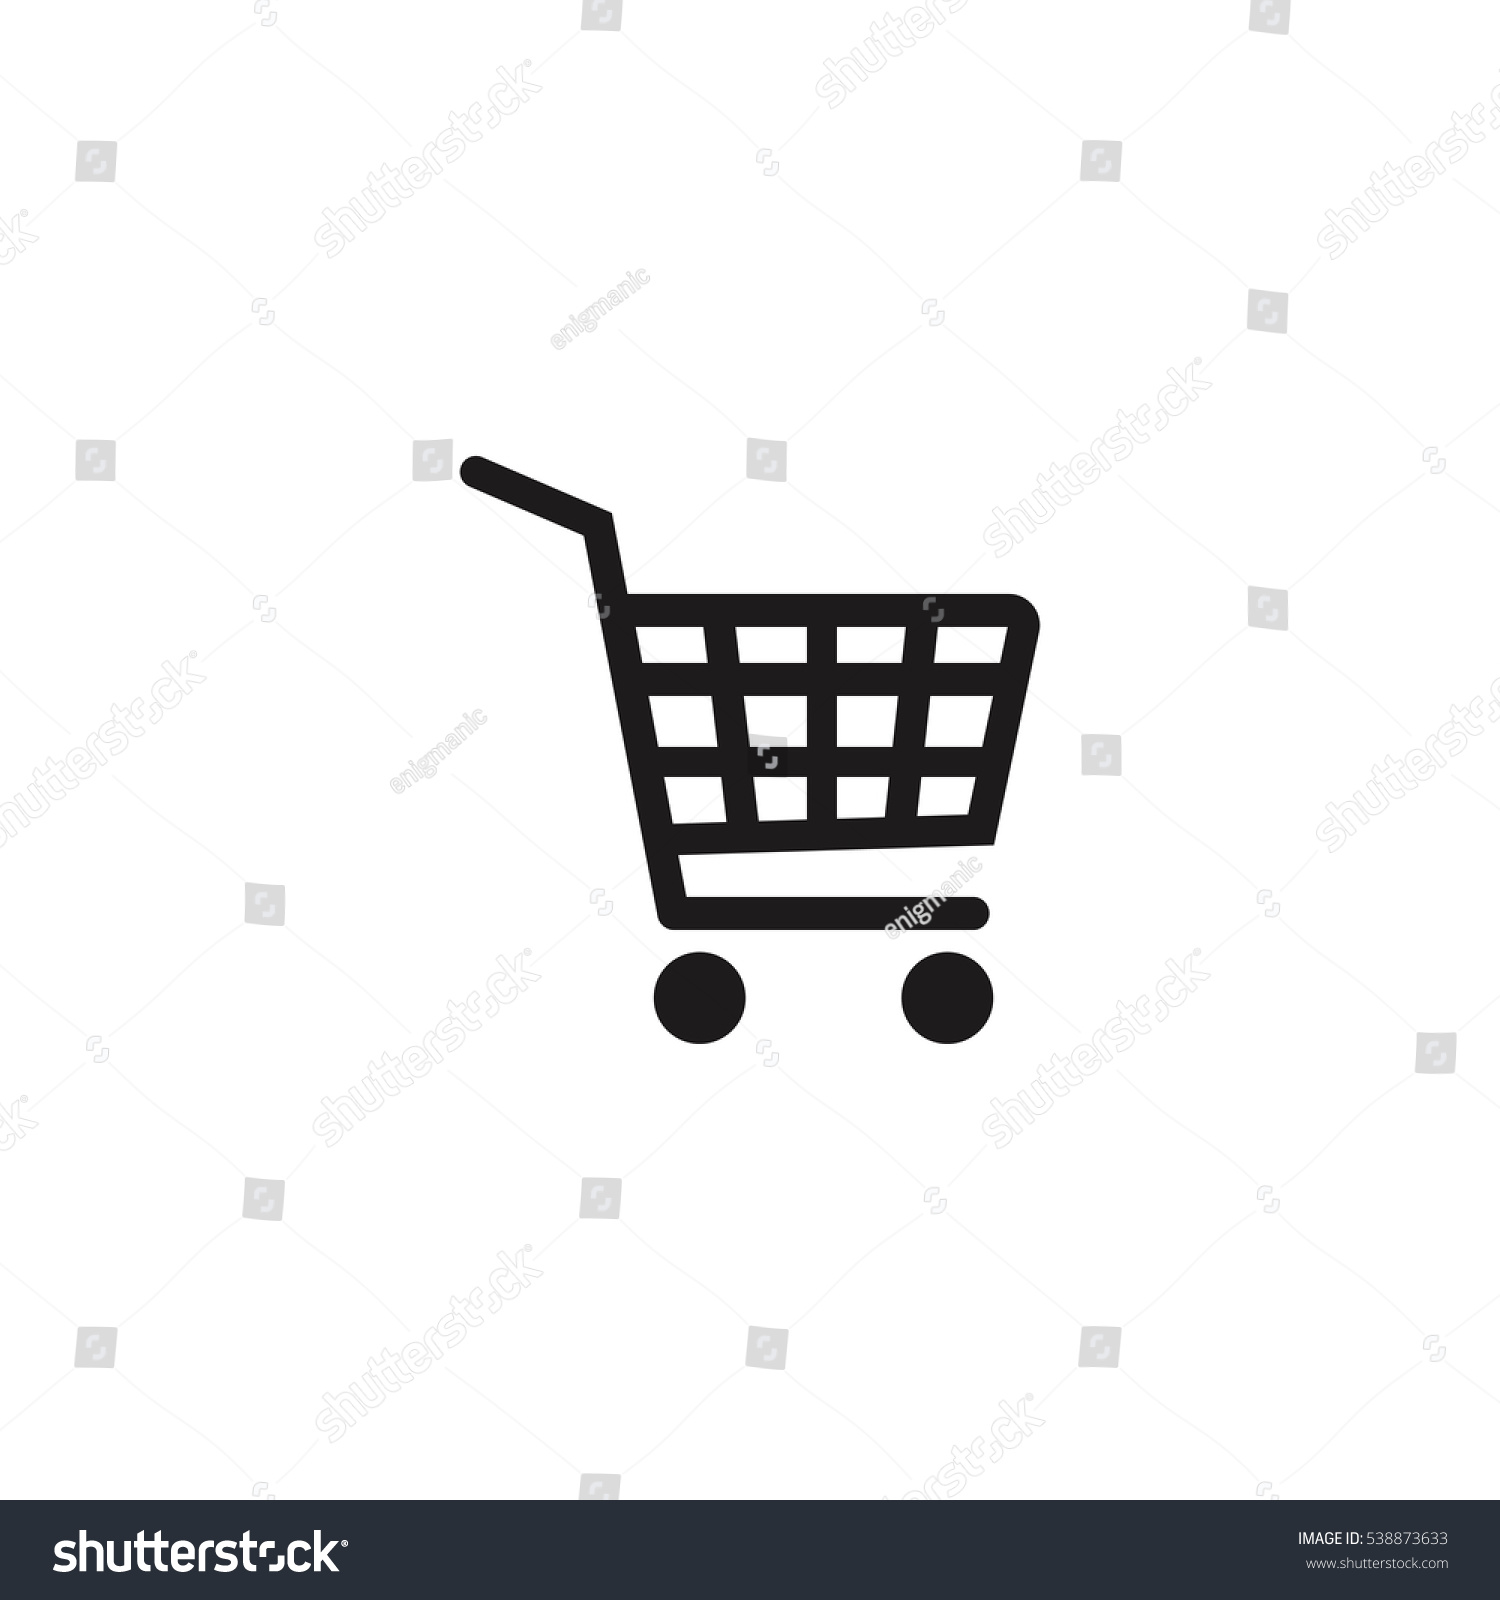 ショッピングカートの単純なベクター画像アイコンイラスト のベクター画像素材 ロイヤリティフリー 538873633